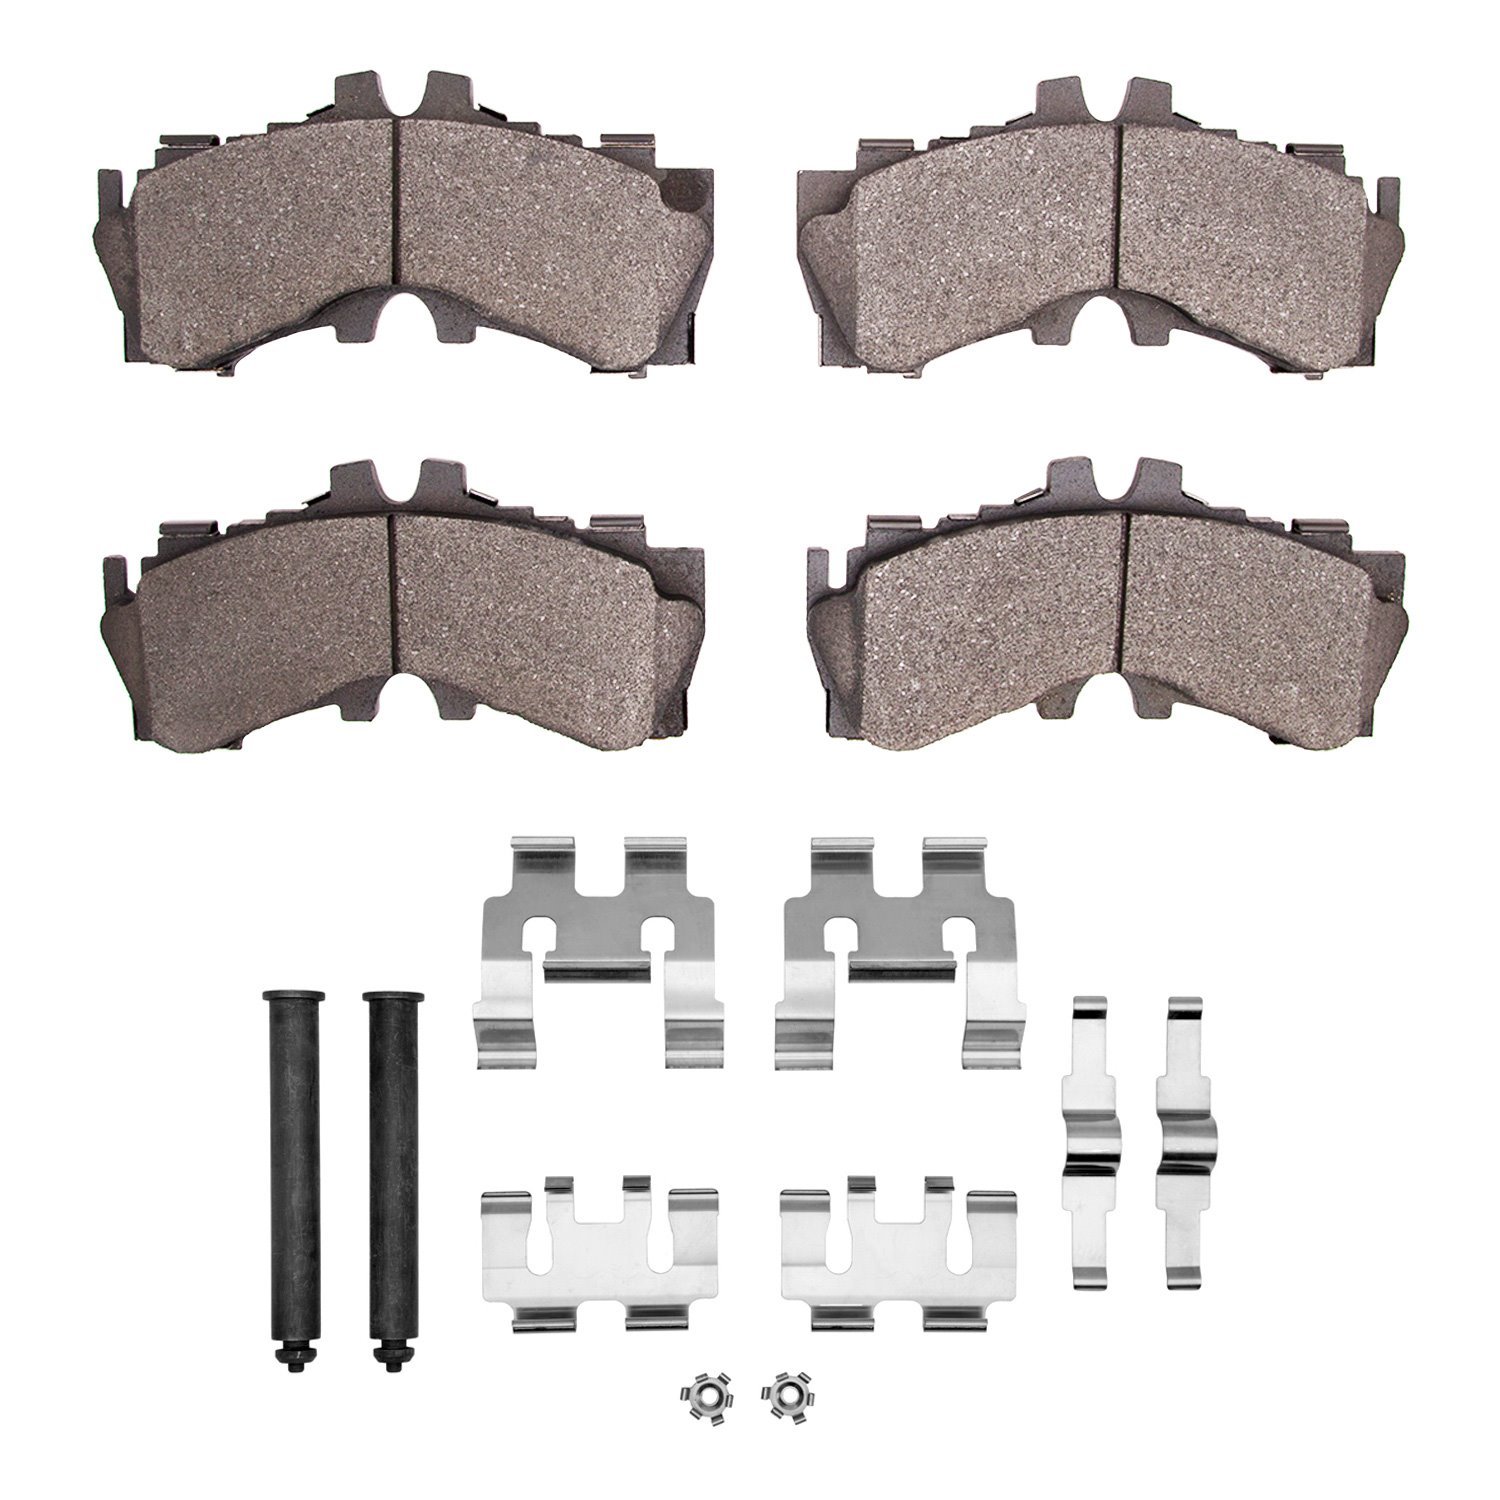 3000-Series Ceramic Brake Pads & Hardware Kit, Fits